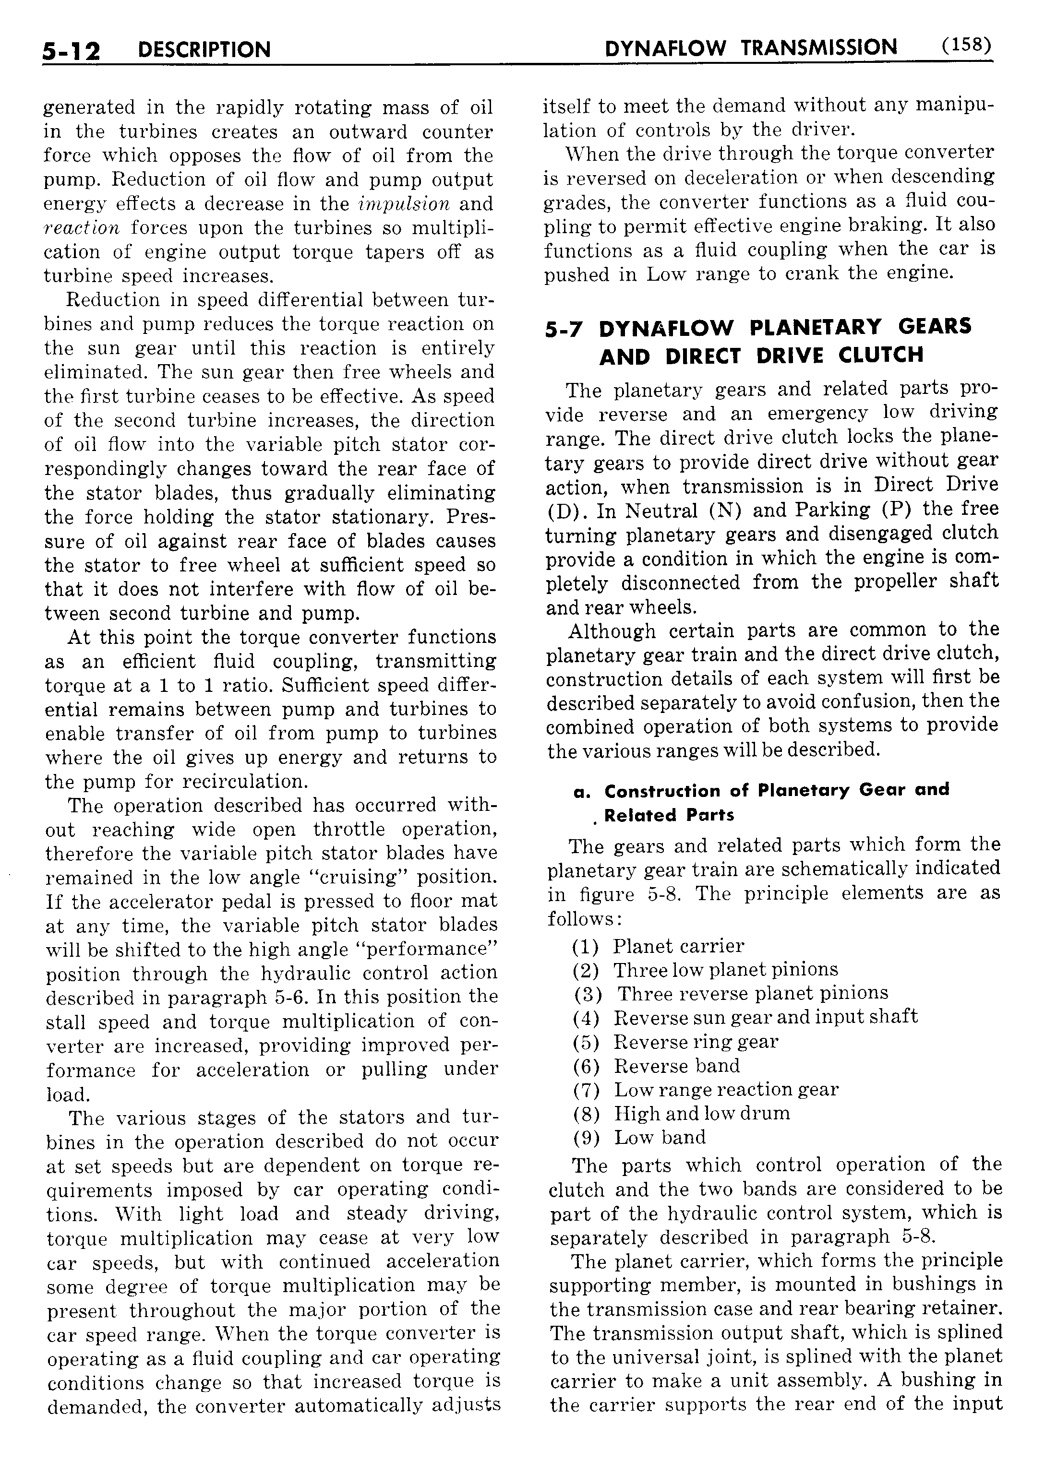 n_06 1956 Buick Shop Manual - Dynaflow-012-012.jpg